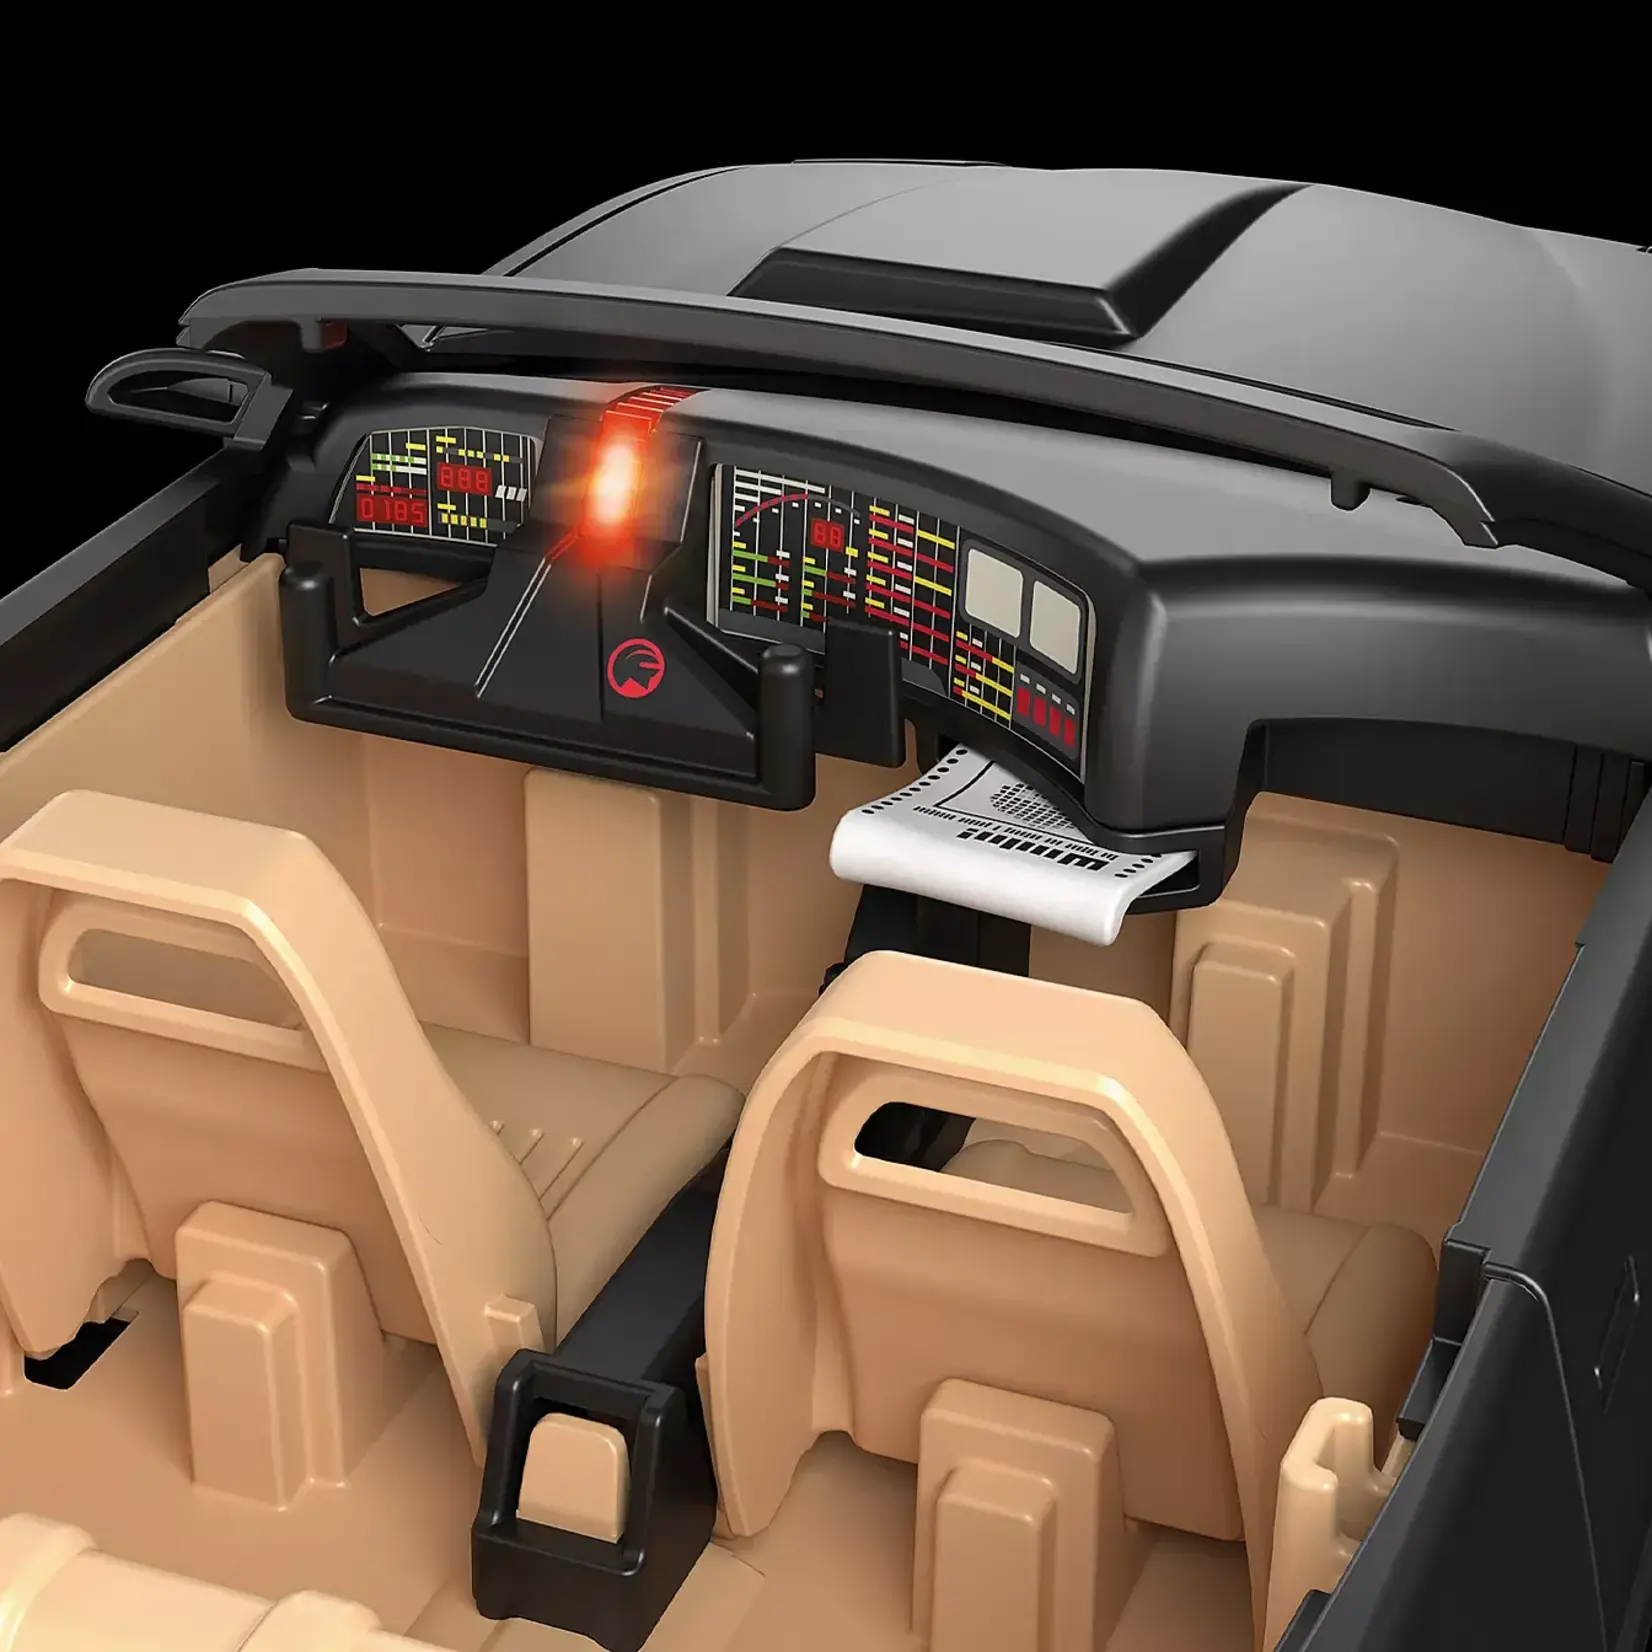 Playmobil Playmobil 70924 - Knight Rider - K.I.T.T.